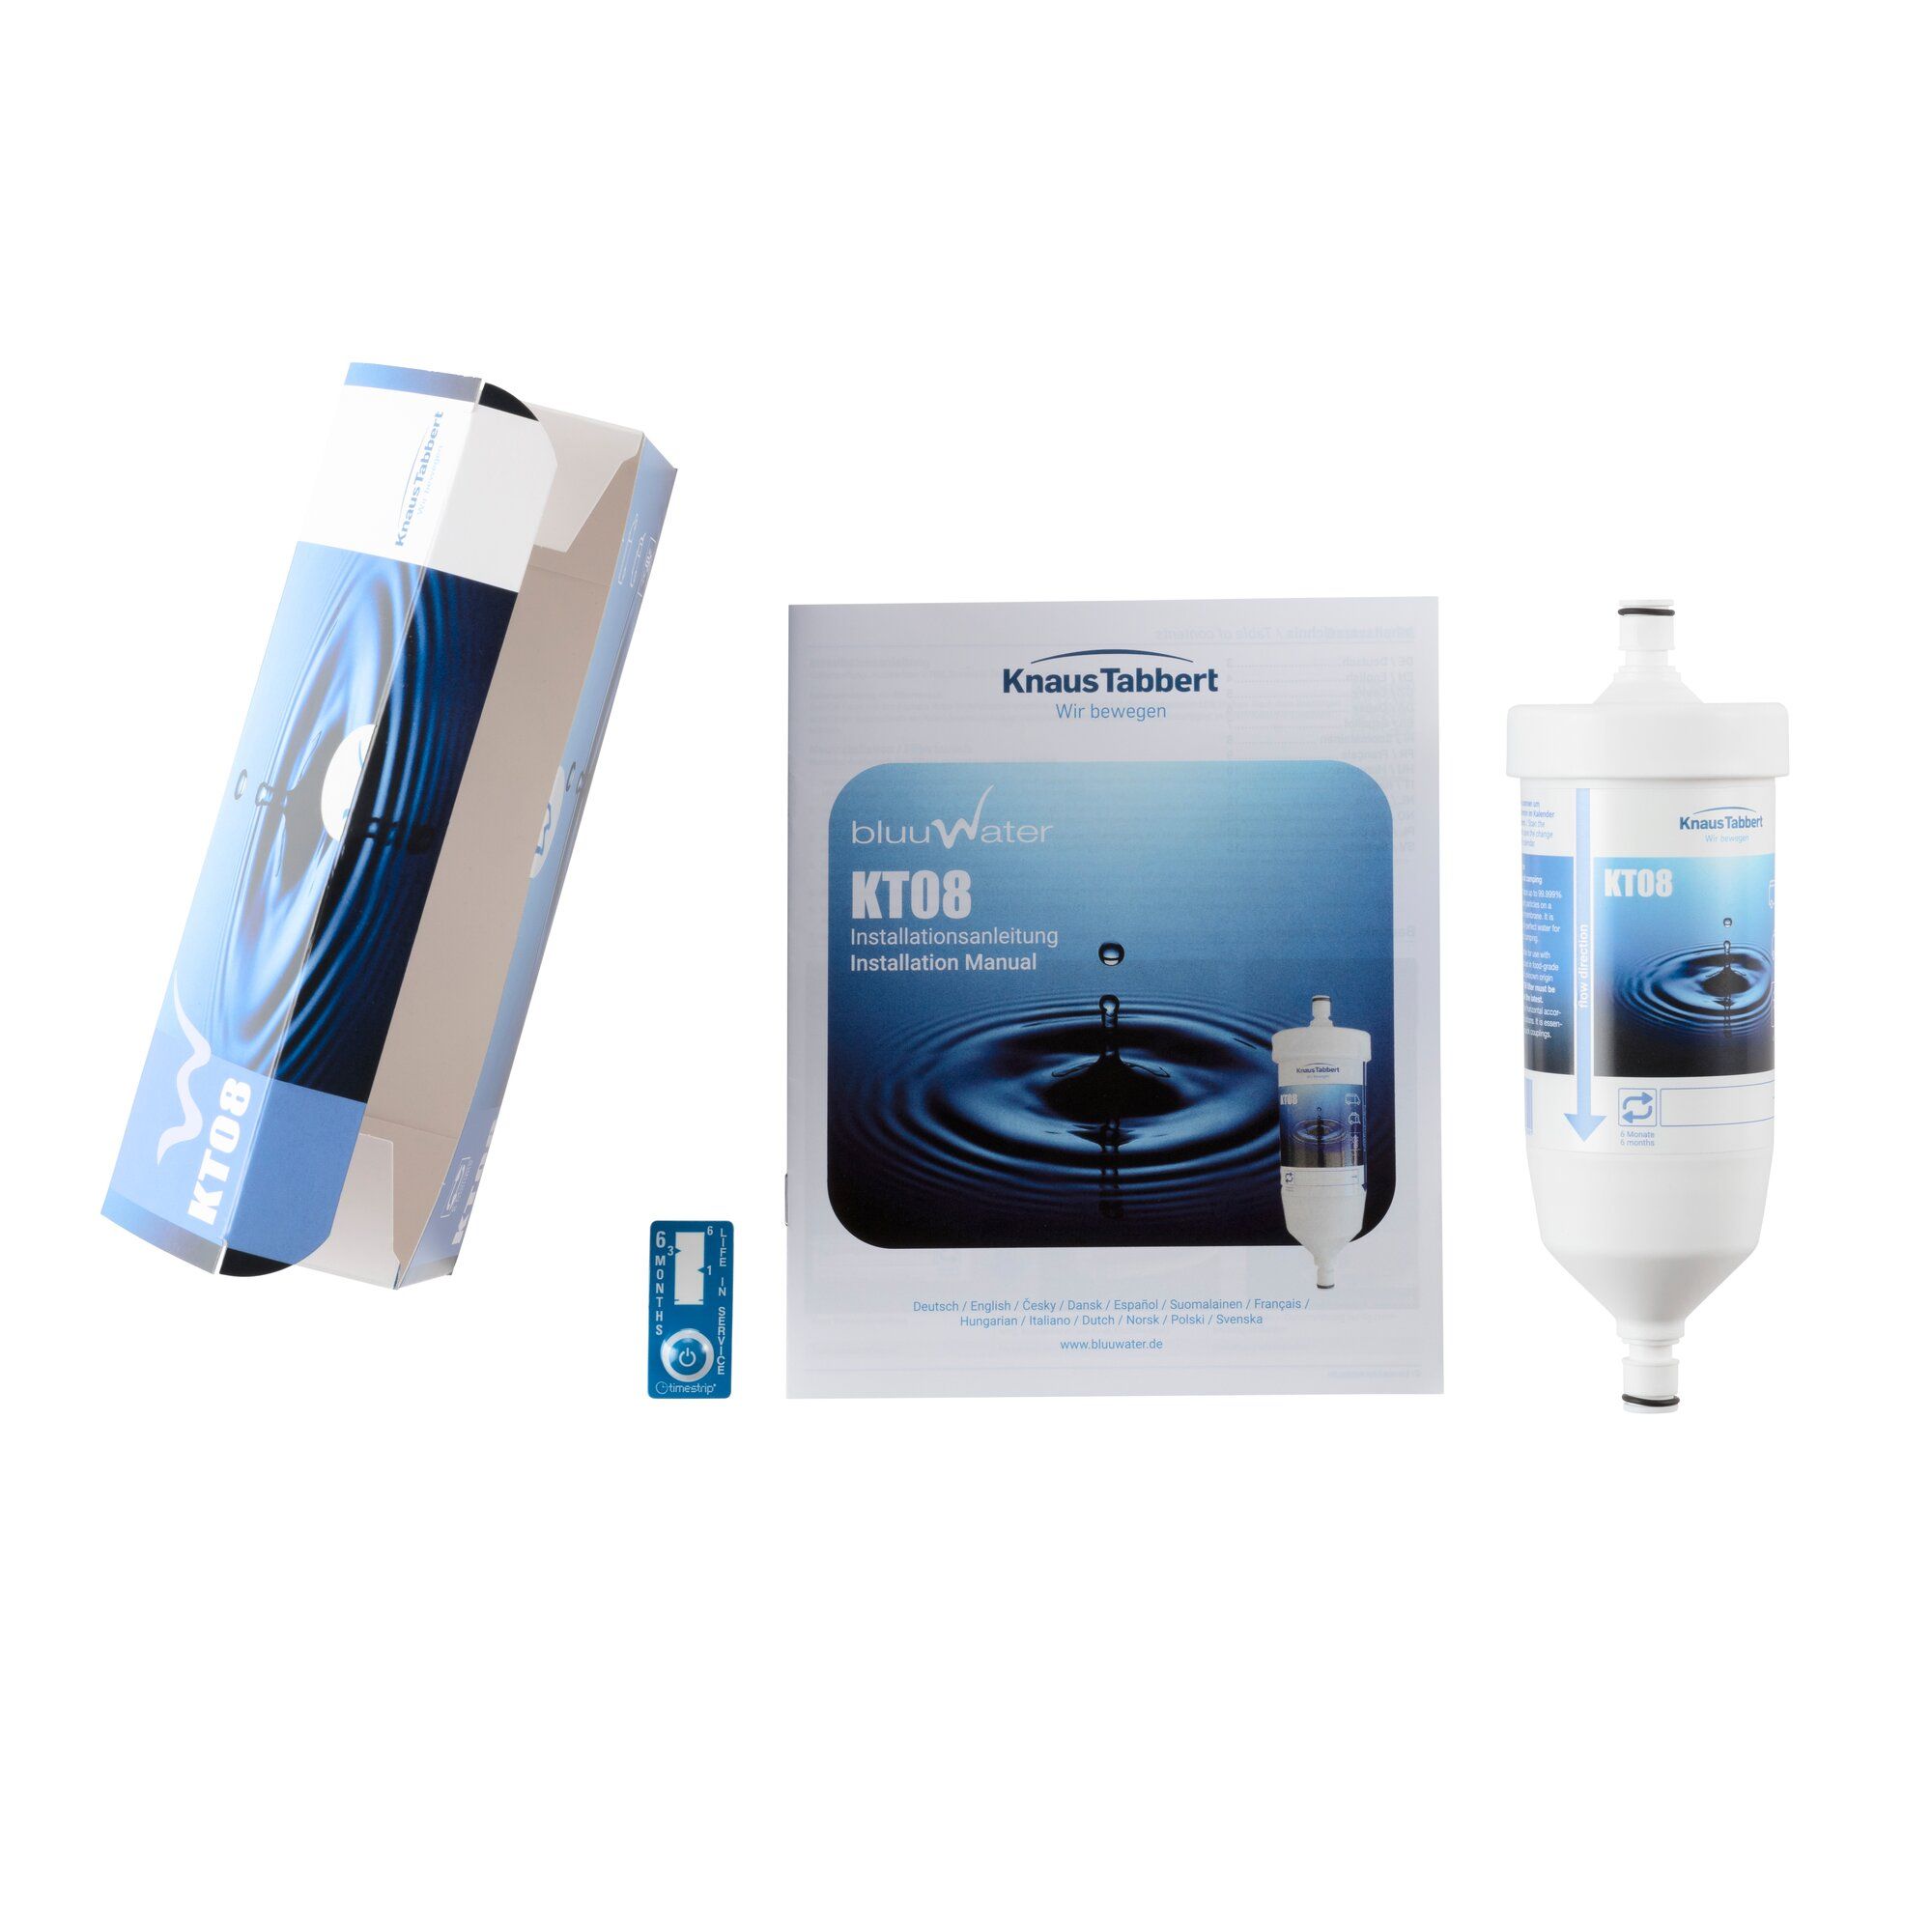 Knaus Tabbert Wasserfilter bluuwater KT08 KNAUS ~ 300/320